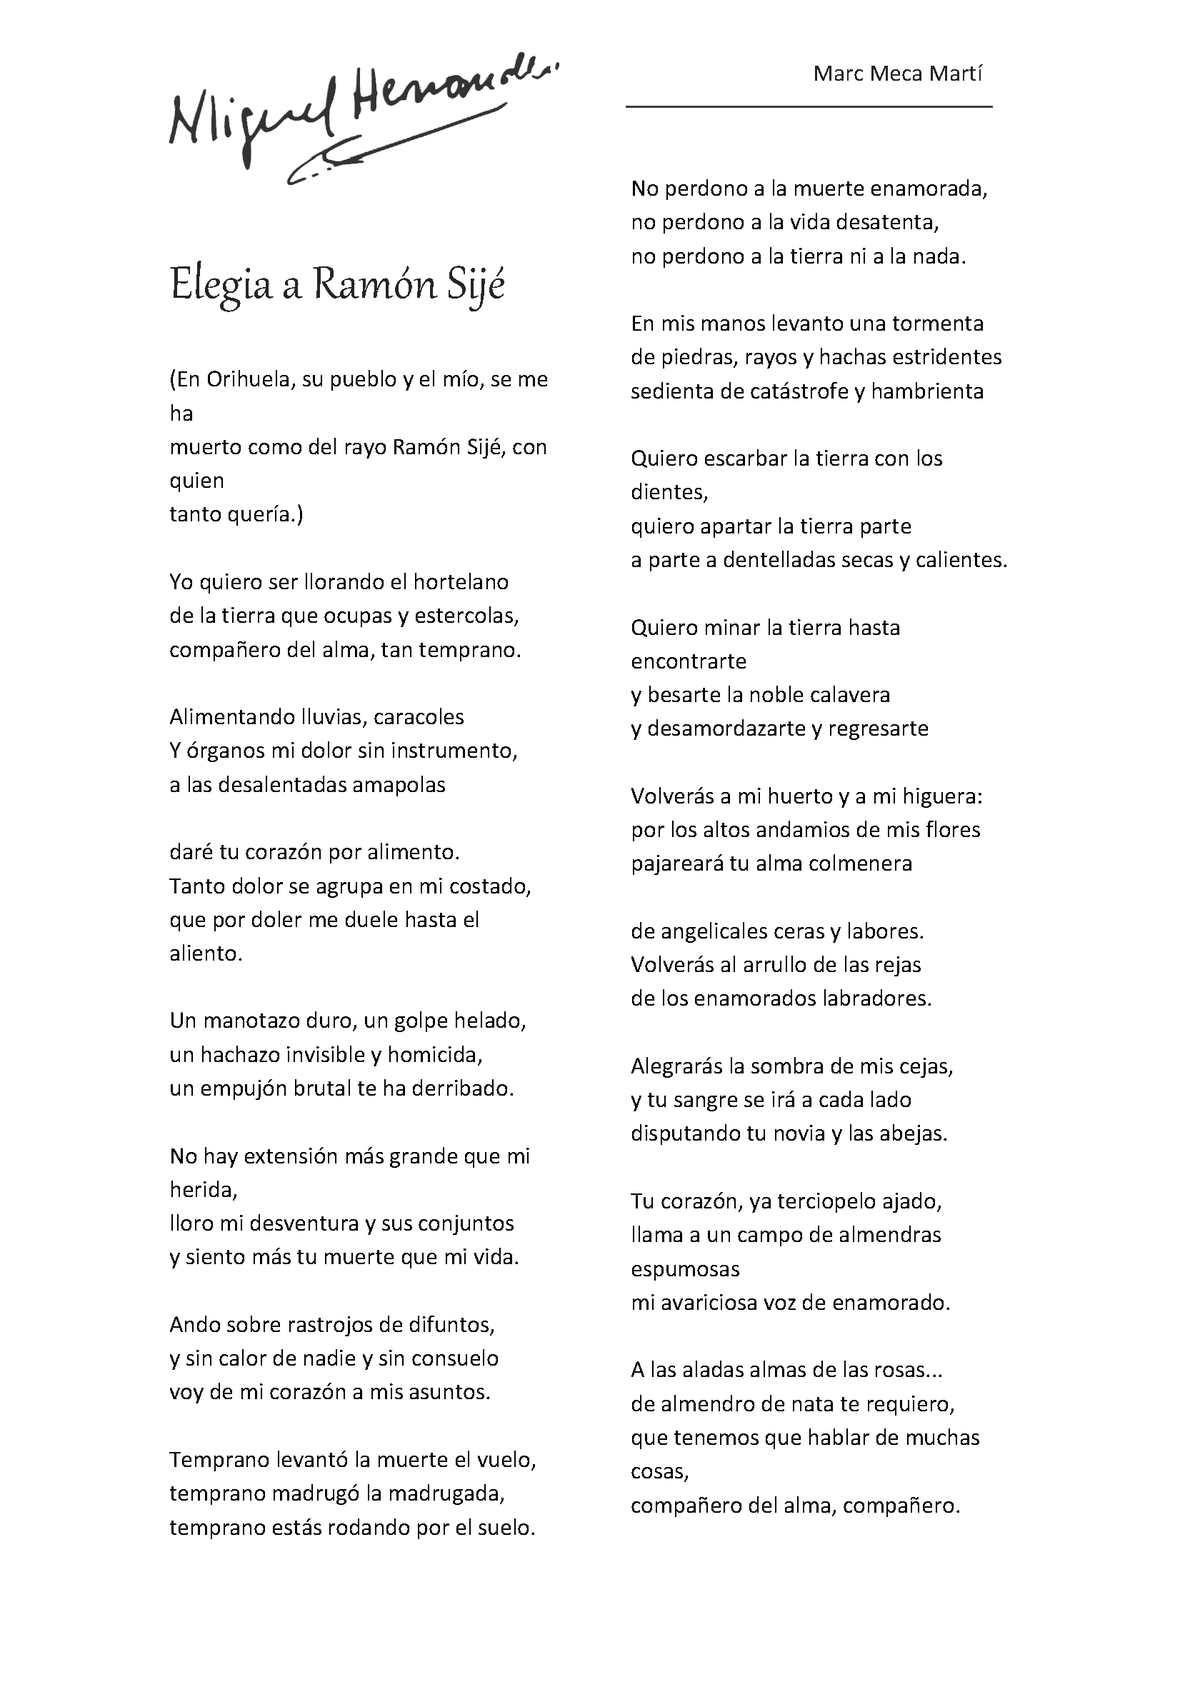 Elegía a Ramón Sijé: La letra que inmortaliza al poeta